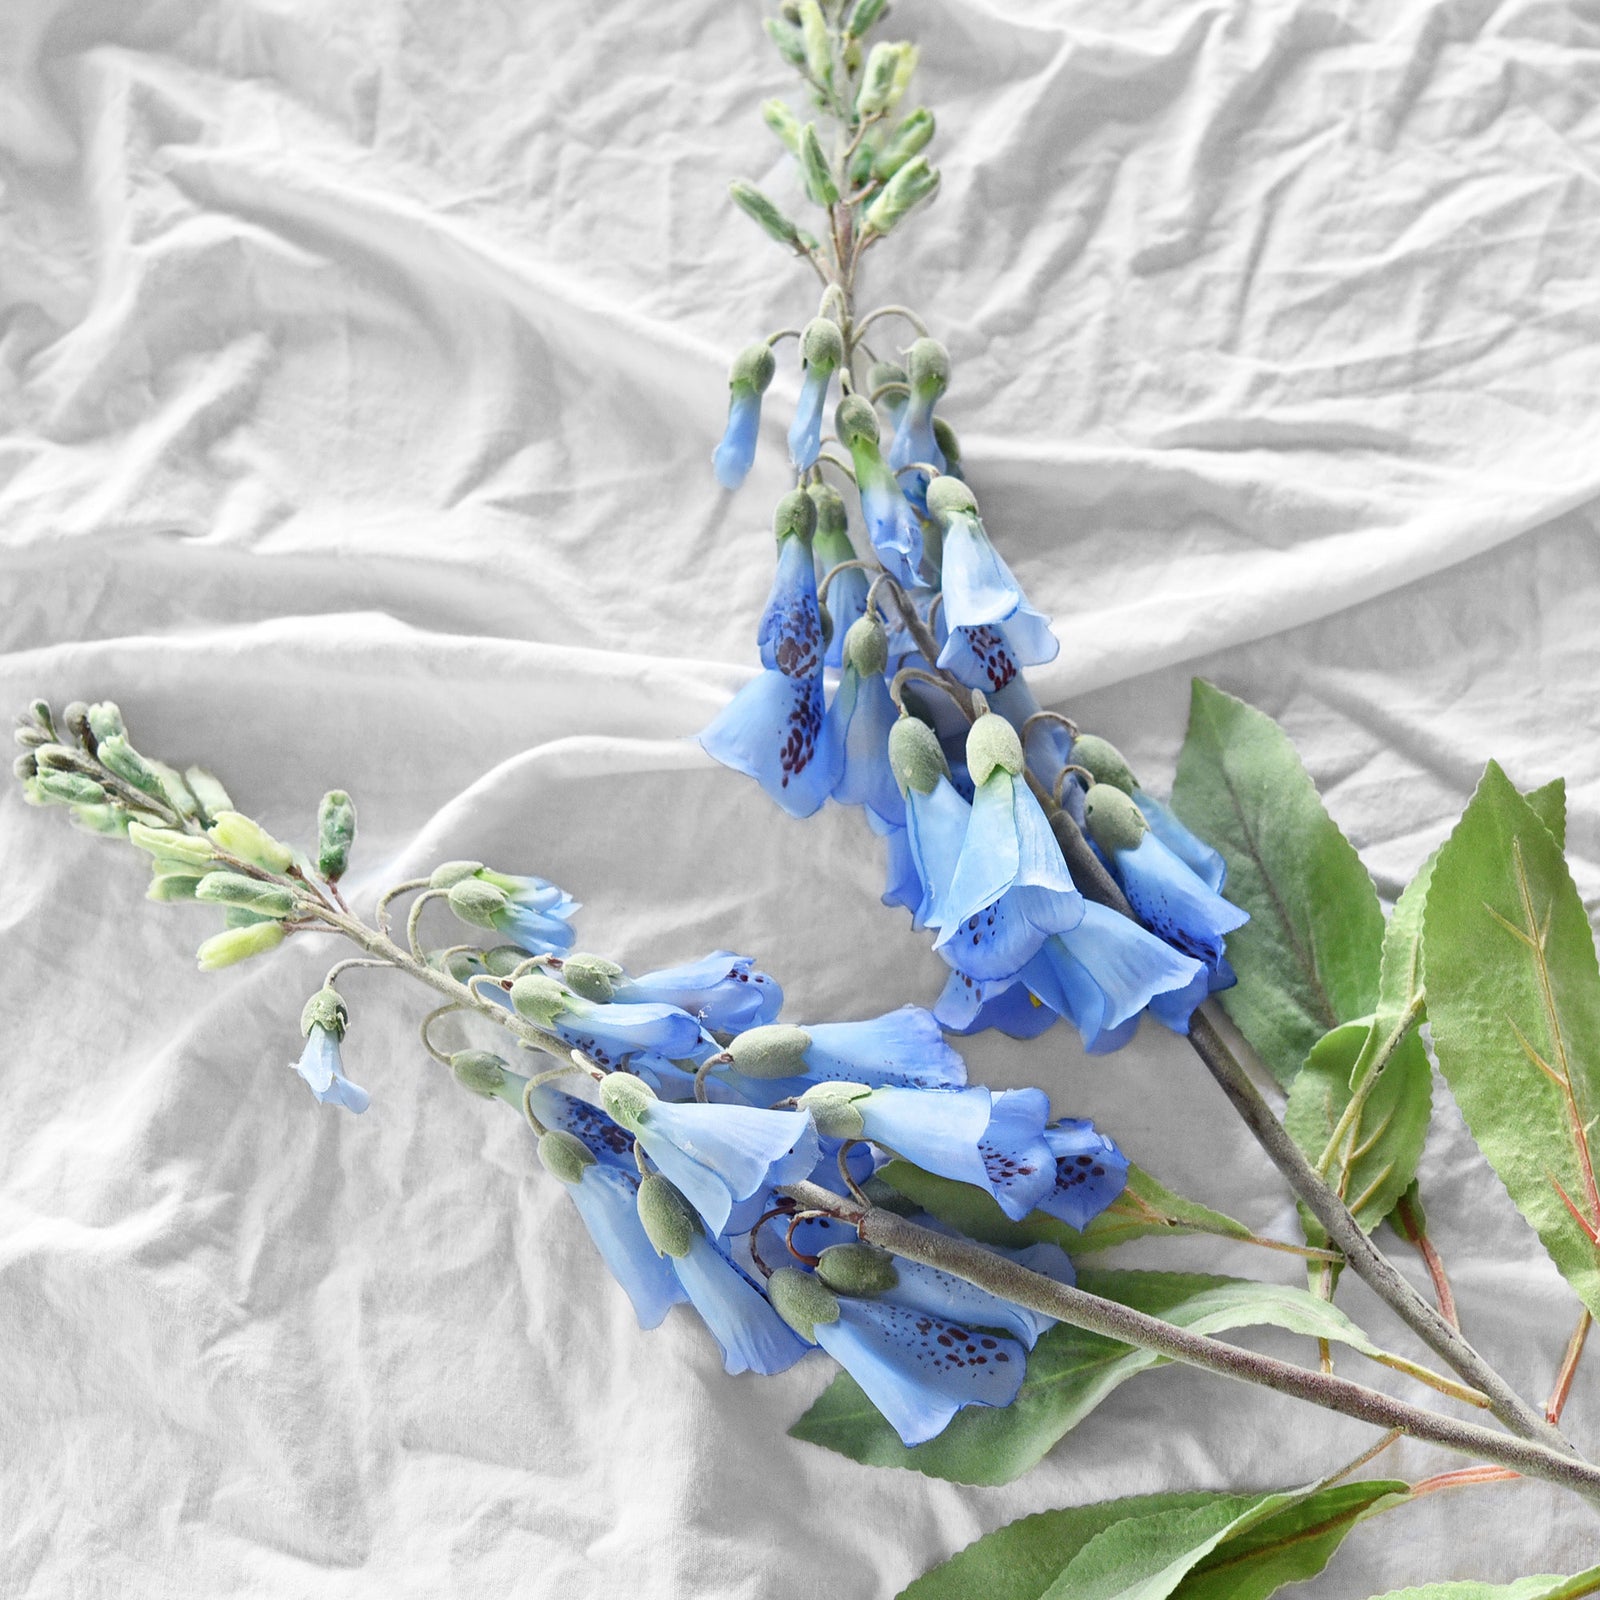 FiveSeasonStuff Artificial Flowers Foxgloves (Tranquil Blue) Silk Plants Flowers Bouquet Wedding Décor 29.1 inches (2 Stems)